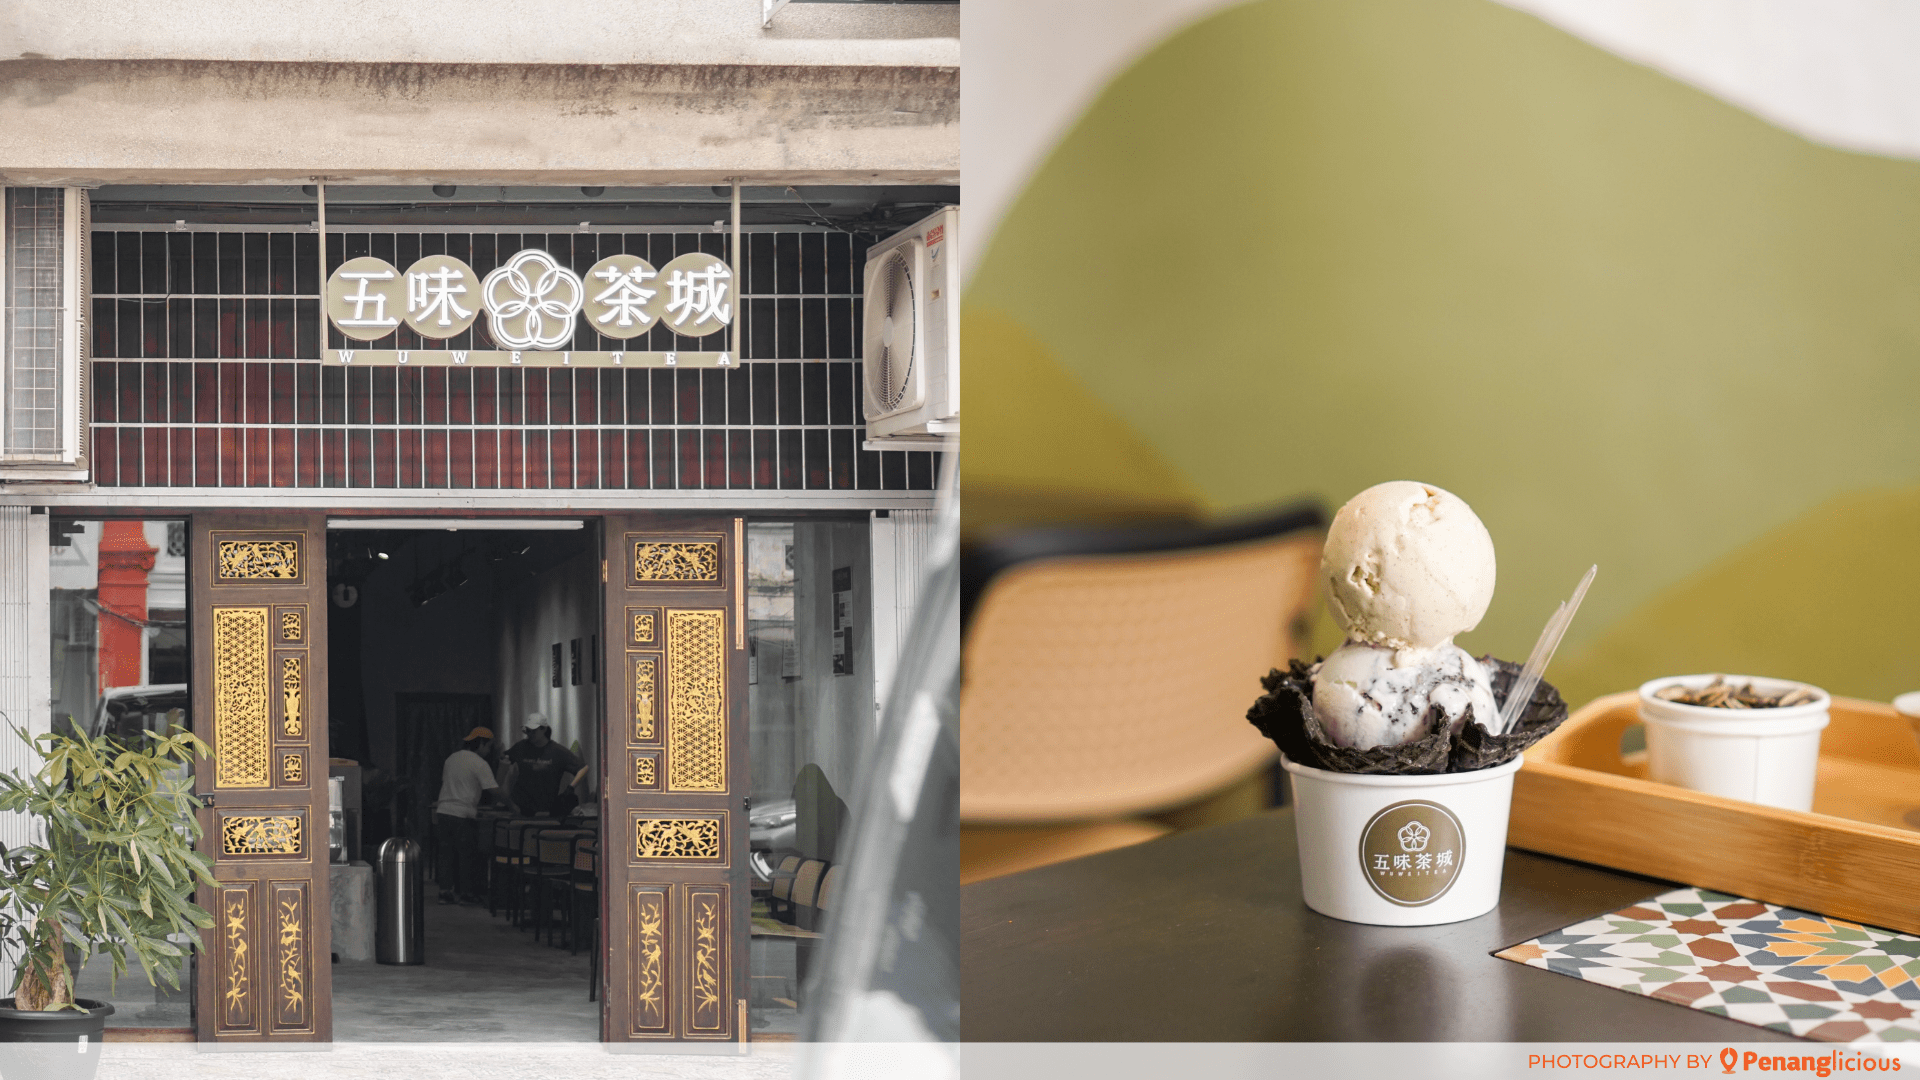 Wu Wei Tea Ice Cream Shop